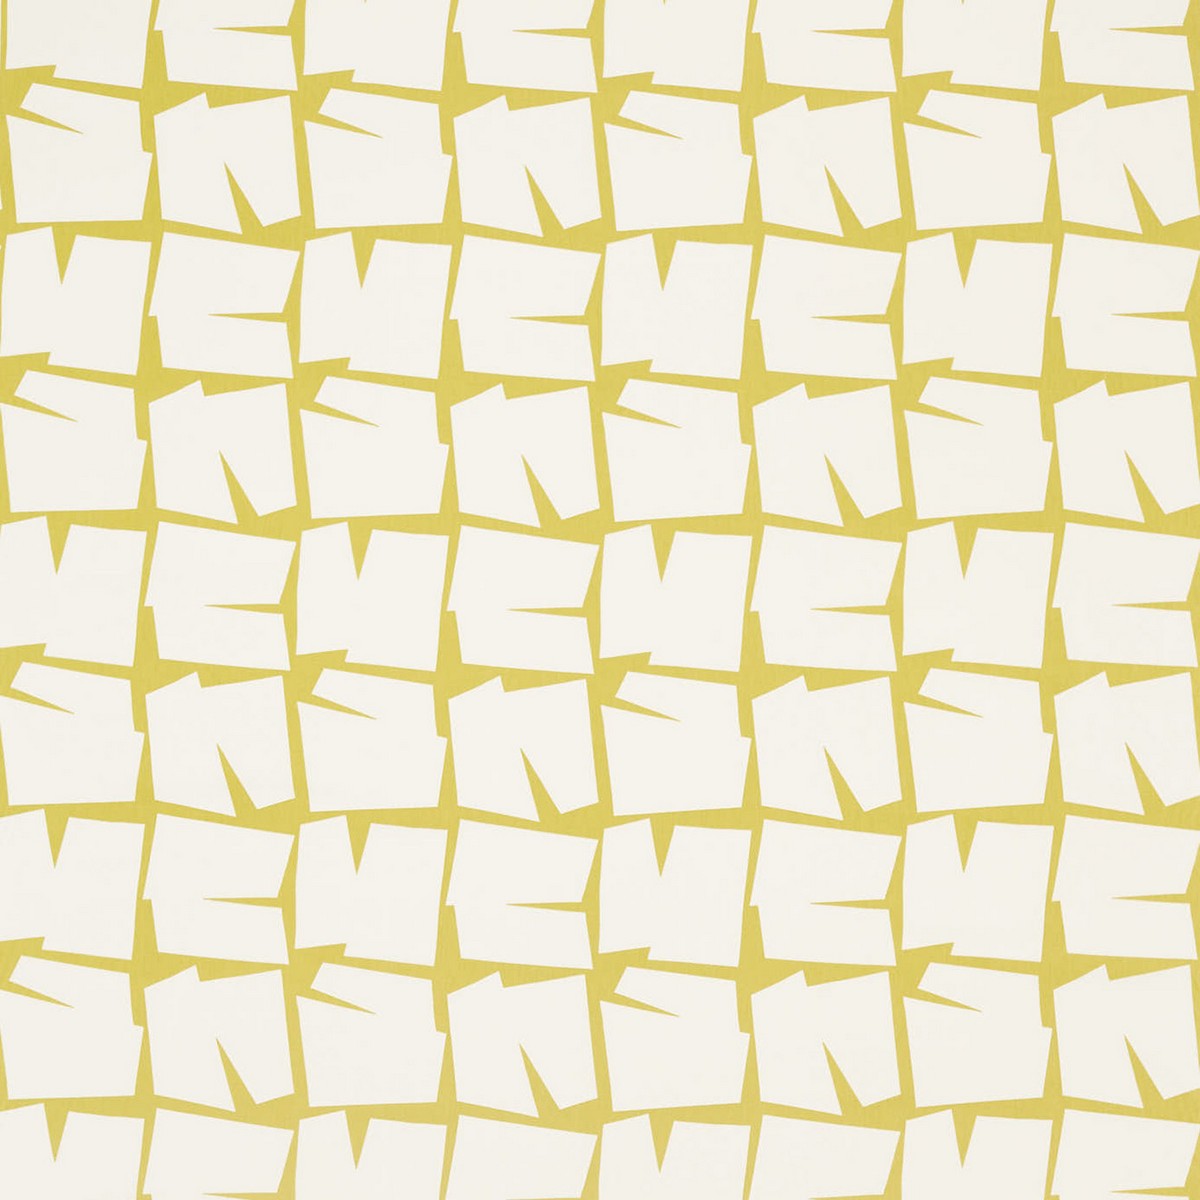 Moqui Citrus Fabric by Scion